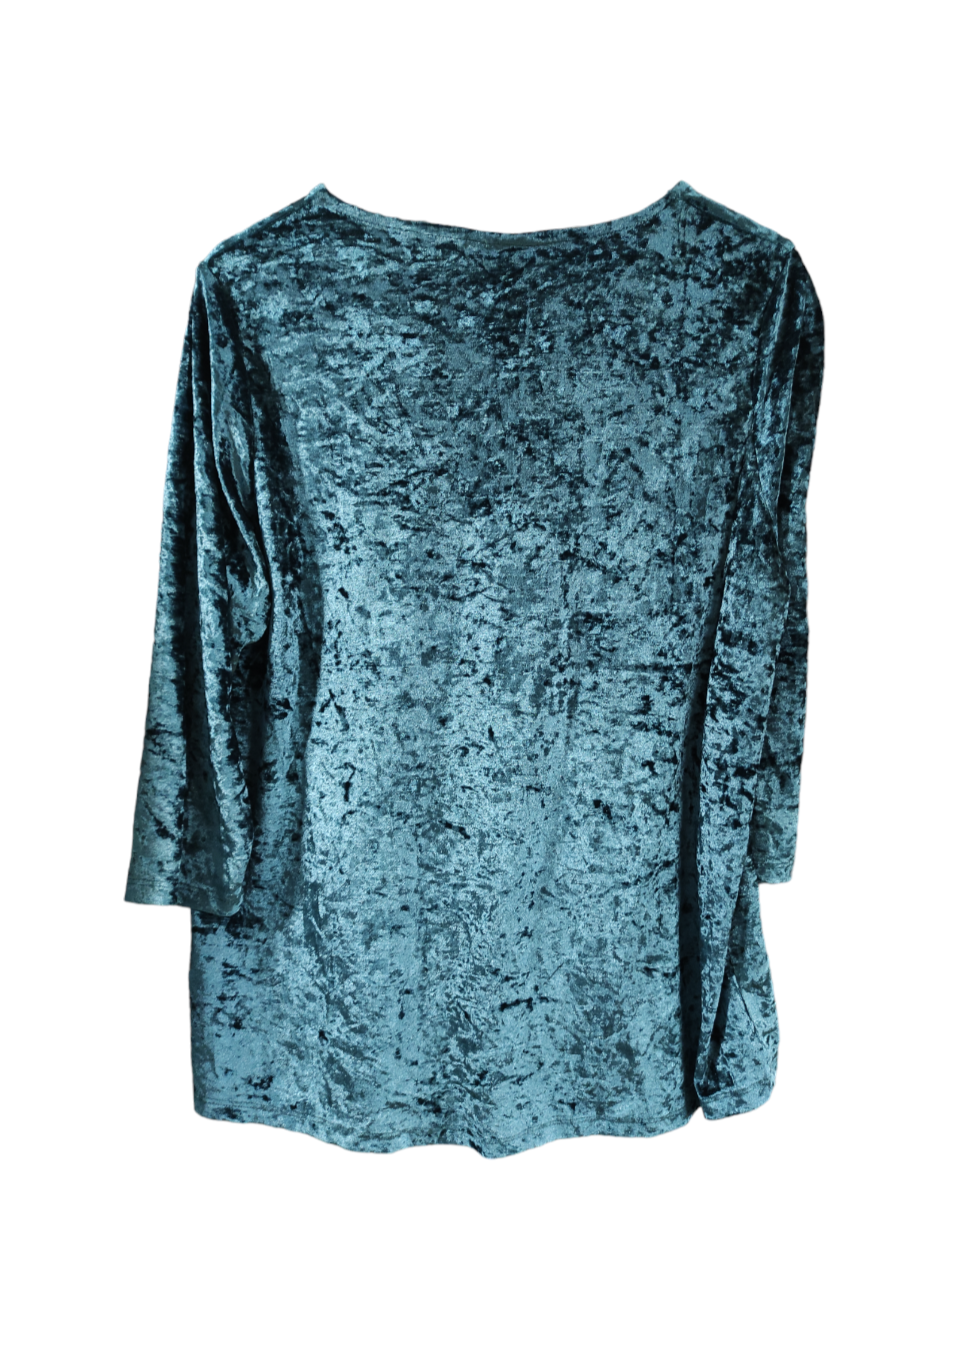 Βελούδινη Γυναικεία Μπλούζα JANINA σε Πετρόλ χρώμα (Large)